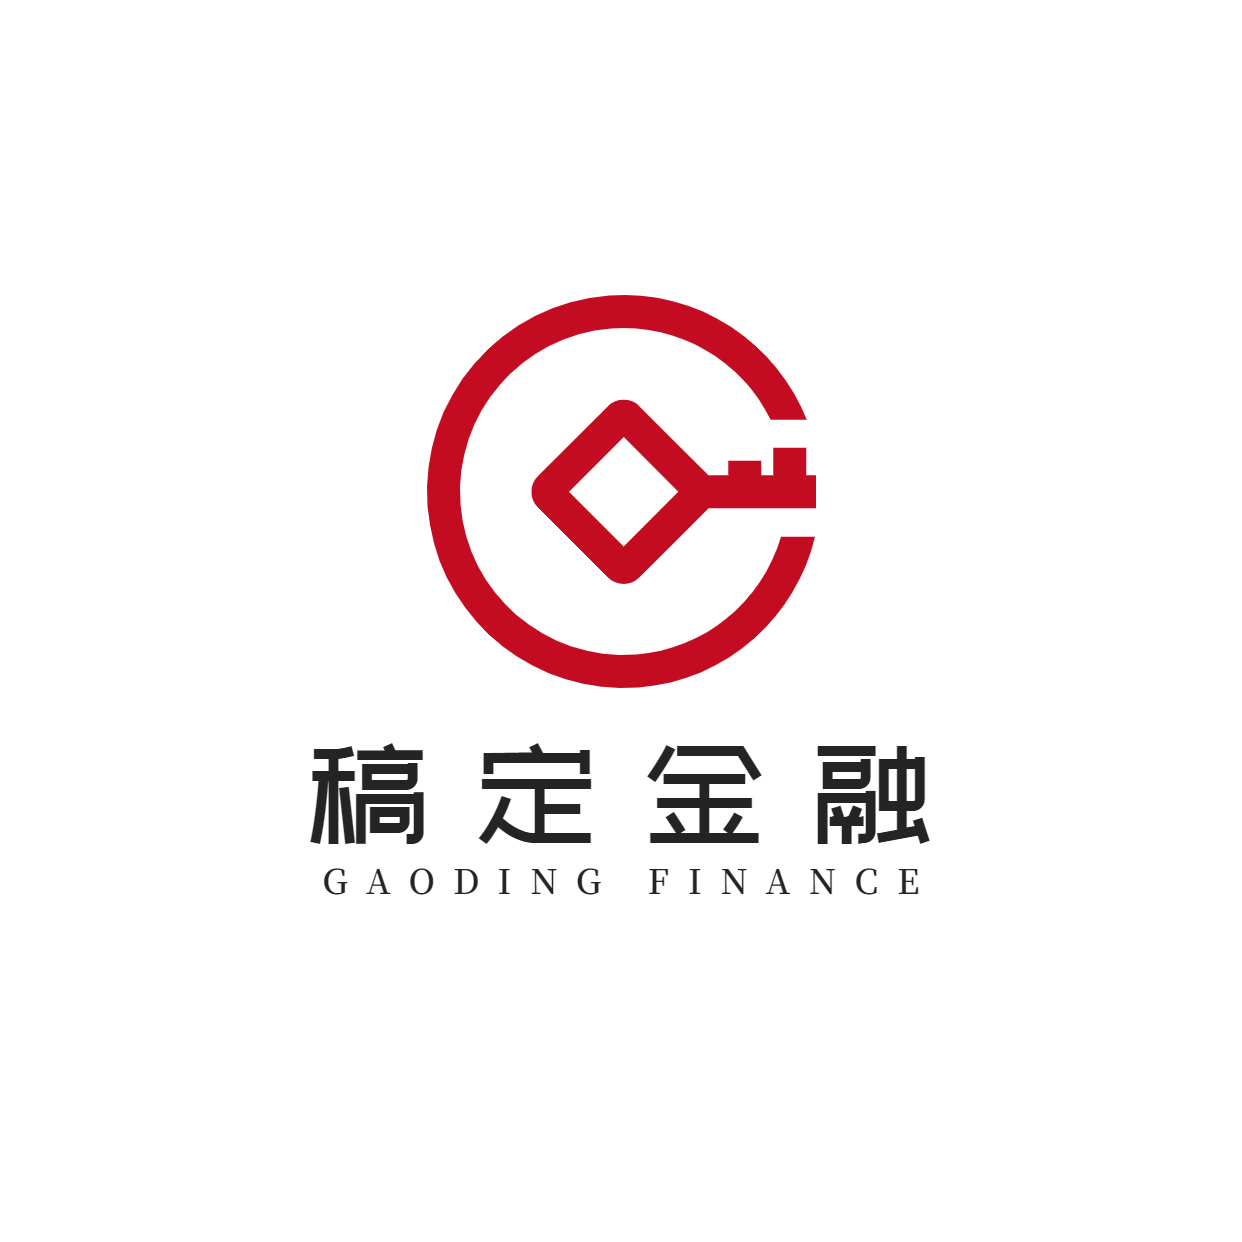 金融保险品牌宣传简约图形logo